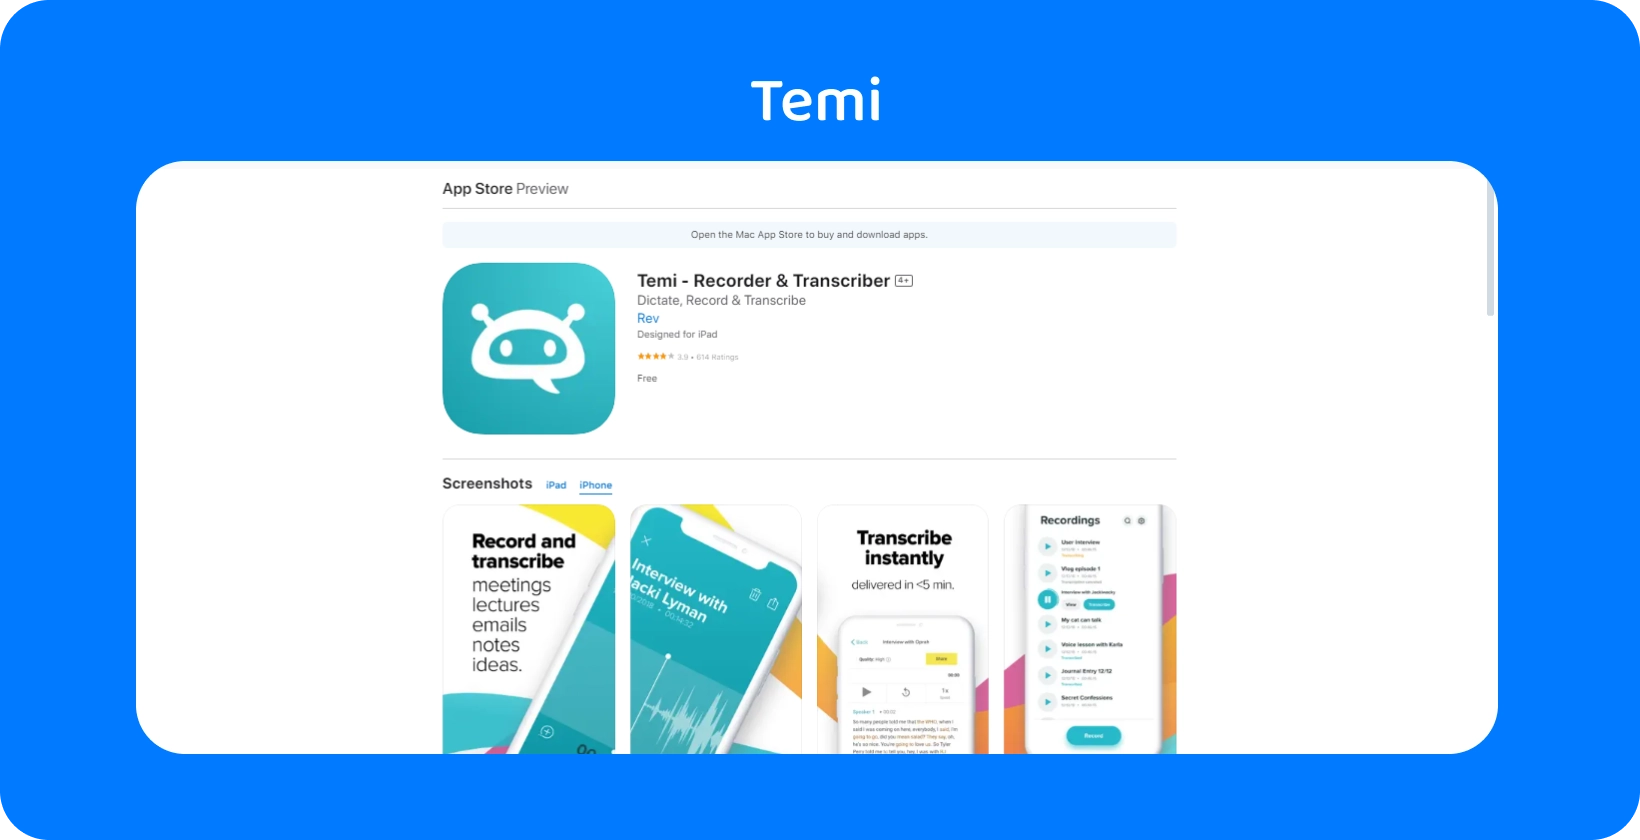 Temi App Store लिस्टिंग का स्क्रीनशॉट, इसकी त्वरित रिकॉर्डिंग और तत्काल ट्रांसक्रिप्शन सुविधाओं पर जोर देता है।